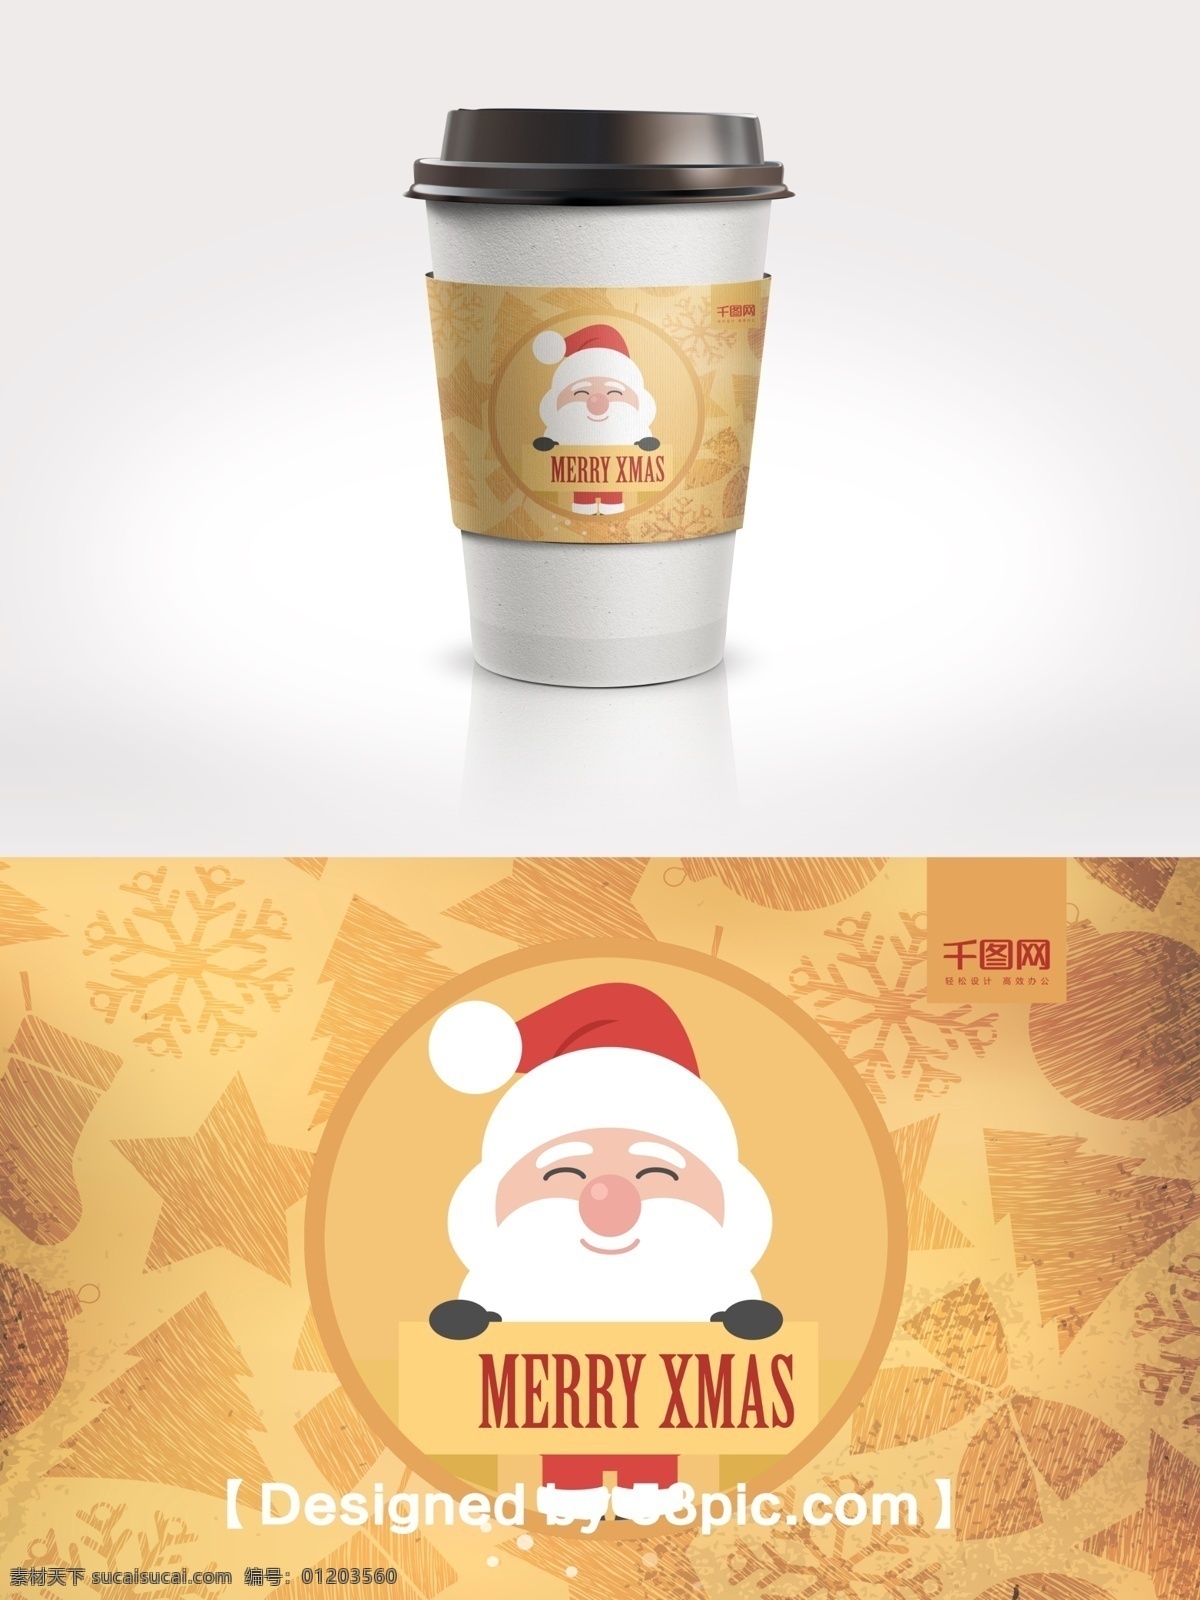 金色 圣诞老人 节日 包装 咖啡杯 套 psd素材 节日包装 咖啡杯套设计 圣诞素材 广告设计模版 简约大气